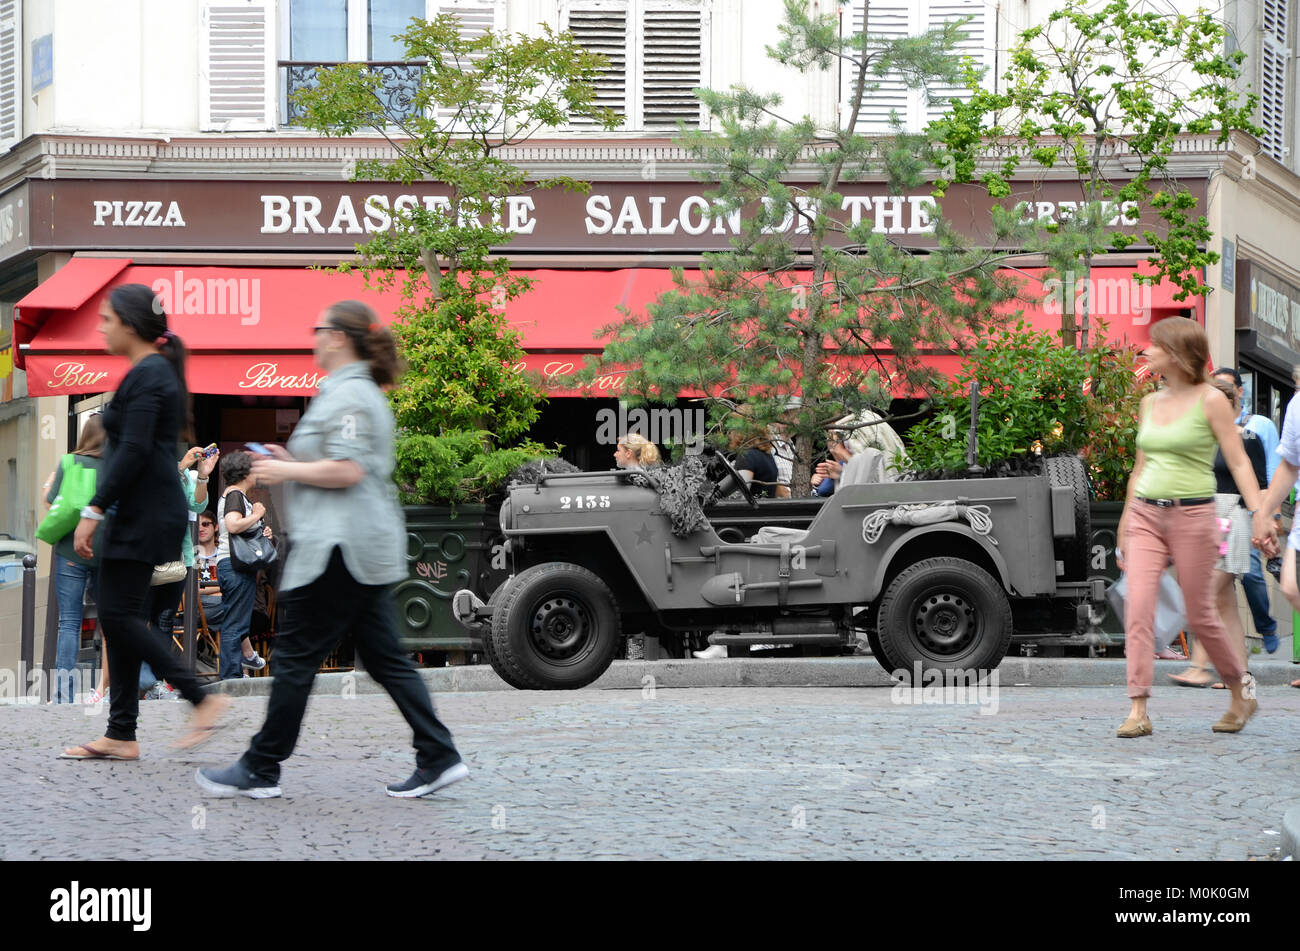 Jeep américain de la guerre à Paris, à l'extérieur de la brasserie Salons de thé dans le quartier de Montmartre à Paris, en France avec Jeep en monochrome. Concept de déformation de temps Banque D'Images